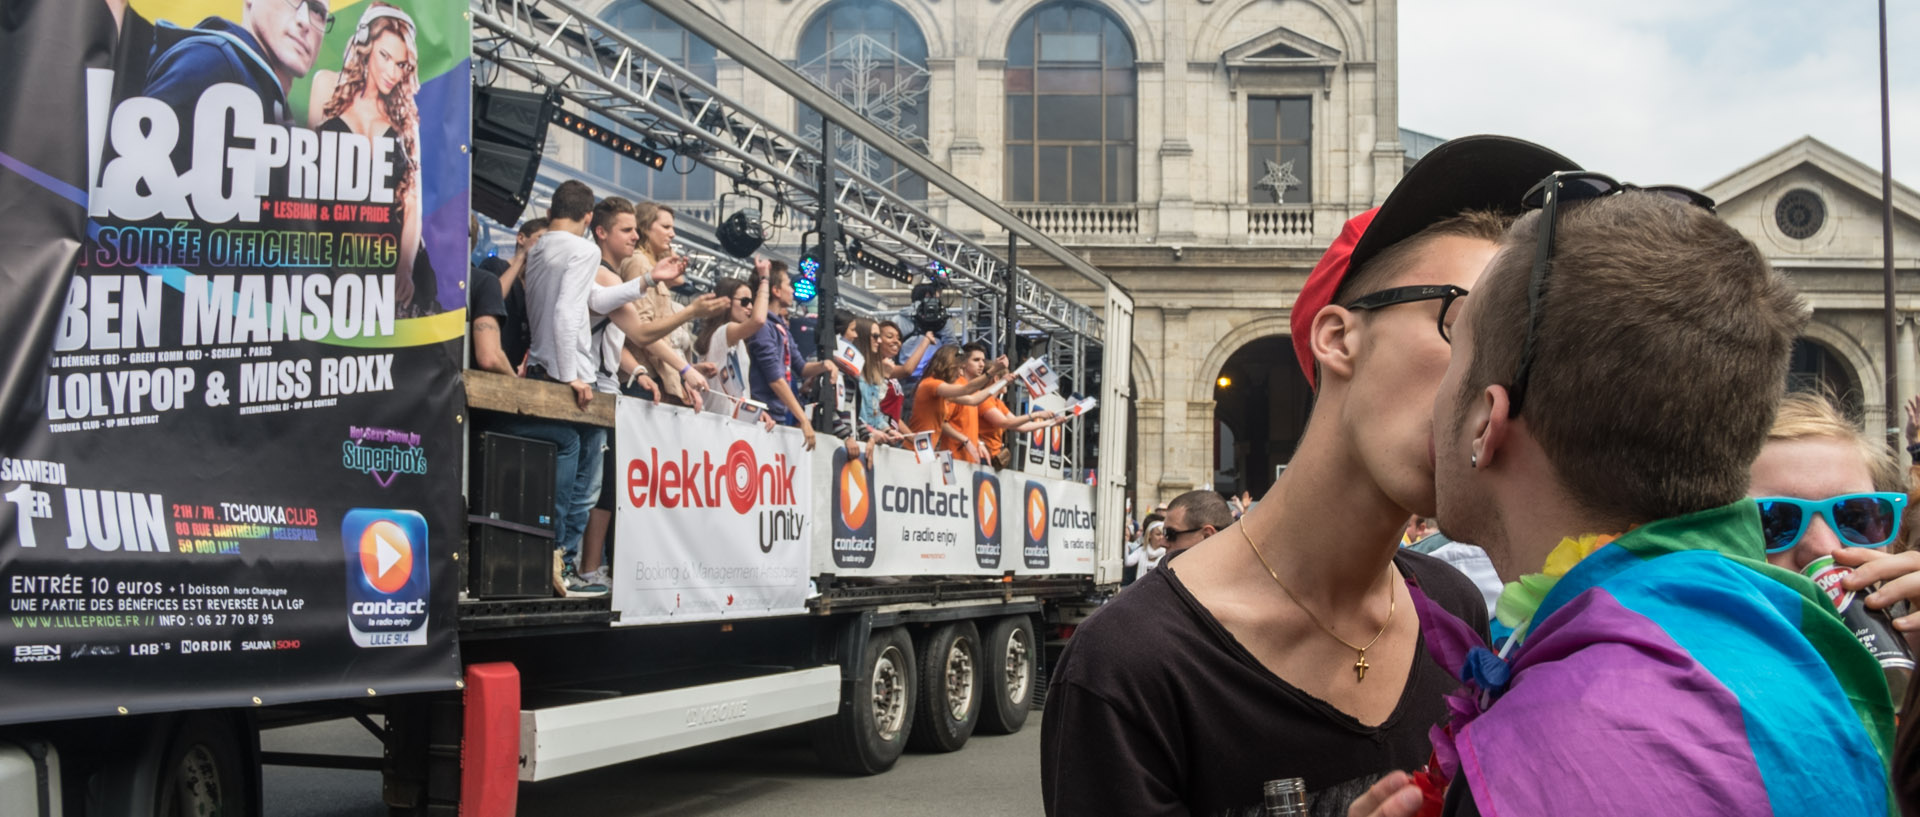 Samedi 1er juin 2013, 15:42, défilé de la lesbian et gay pride, place de la Gare, Lille